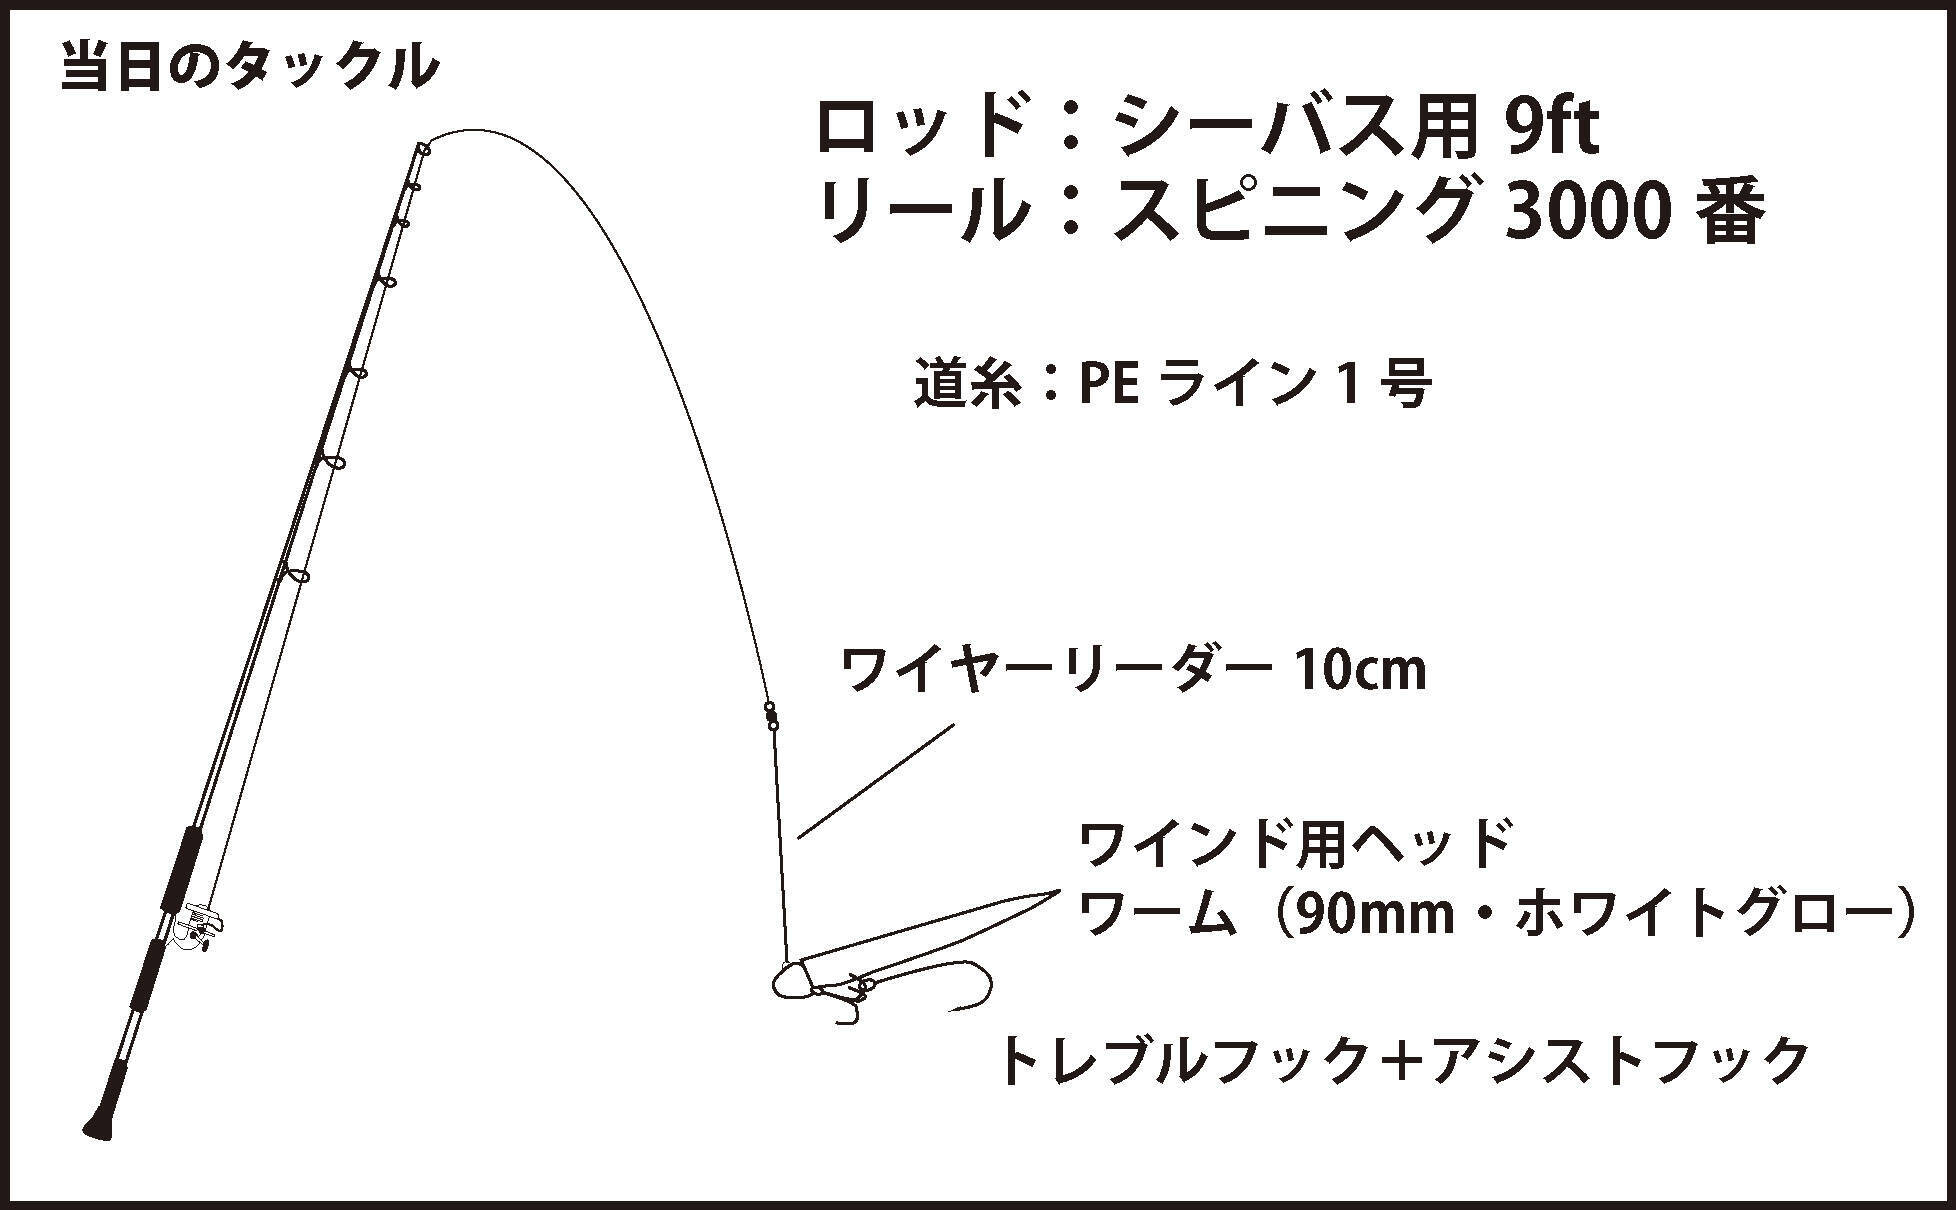 2日連続のワインドタチウオで80cm級 いよいよシーズン到来 大阪 19年10月7日 エキサイトニュース